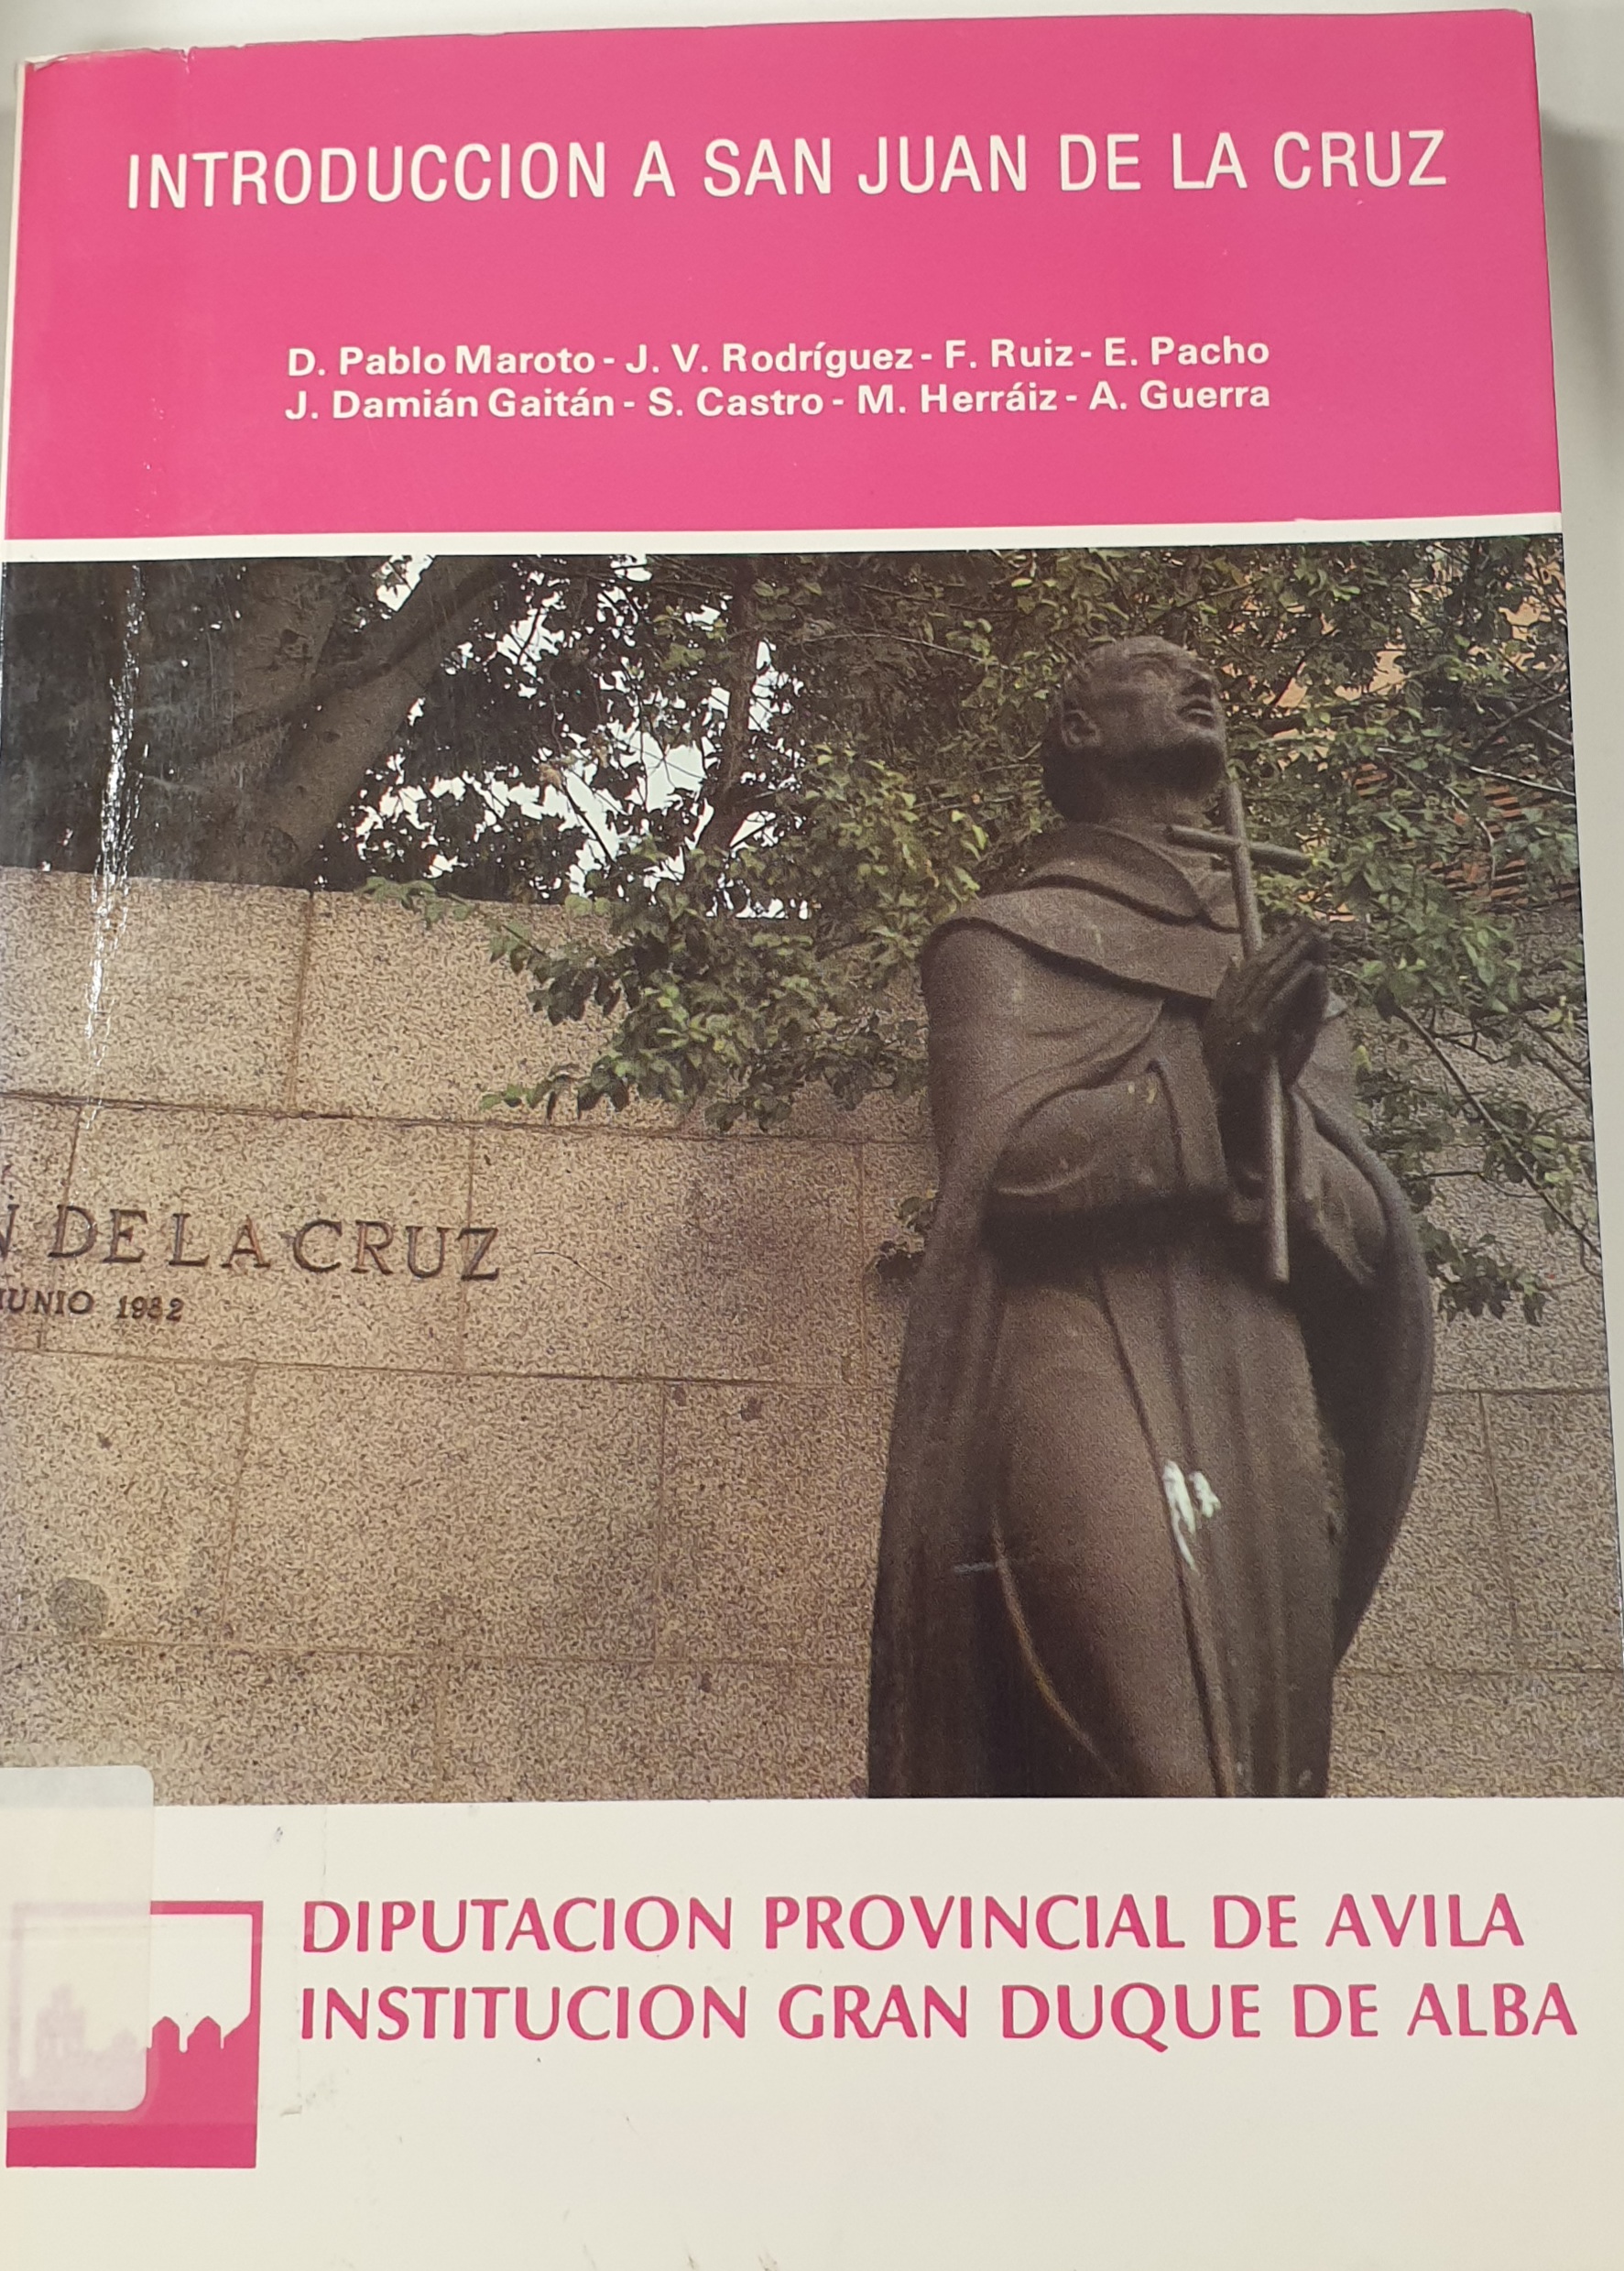 Imagen de portada del libro Introducción a San Juan de la Cruz